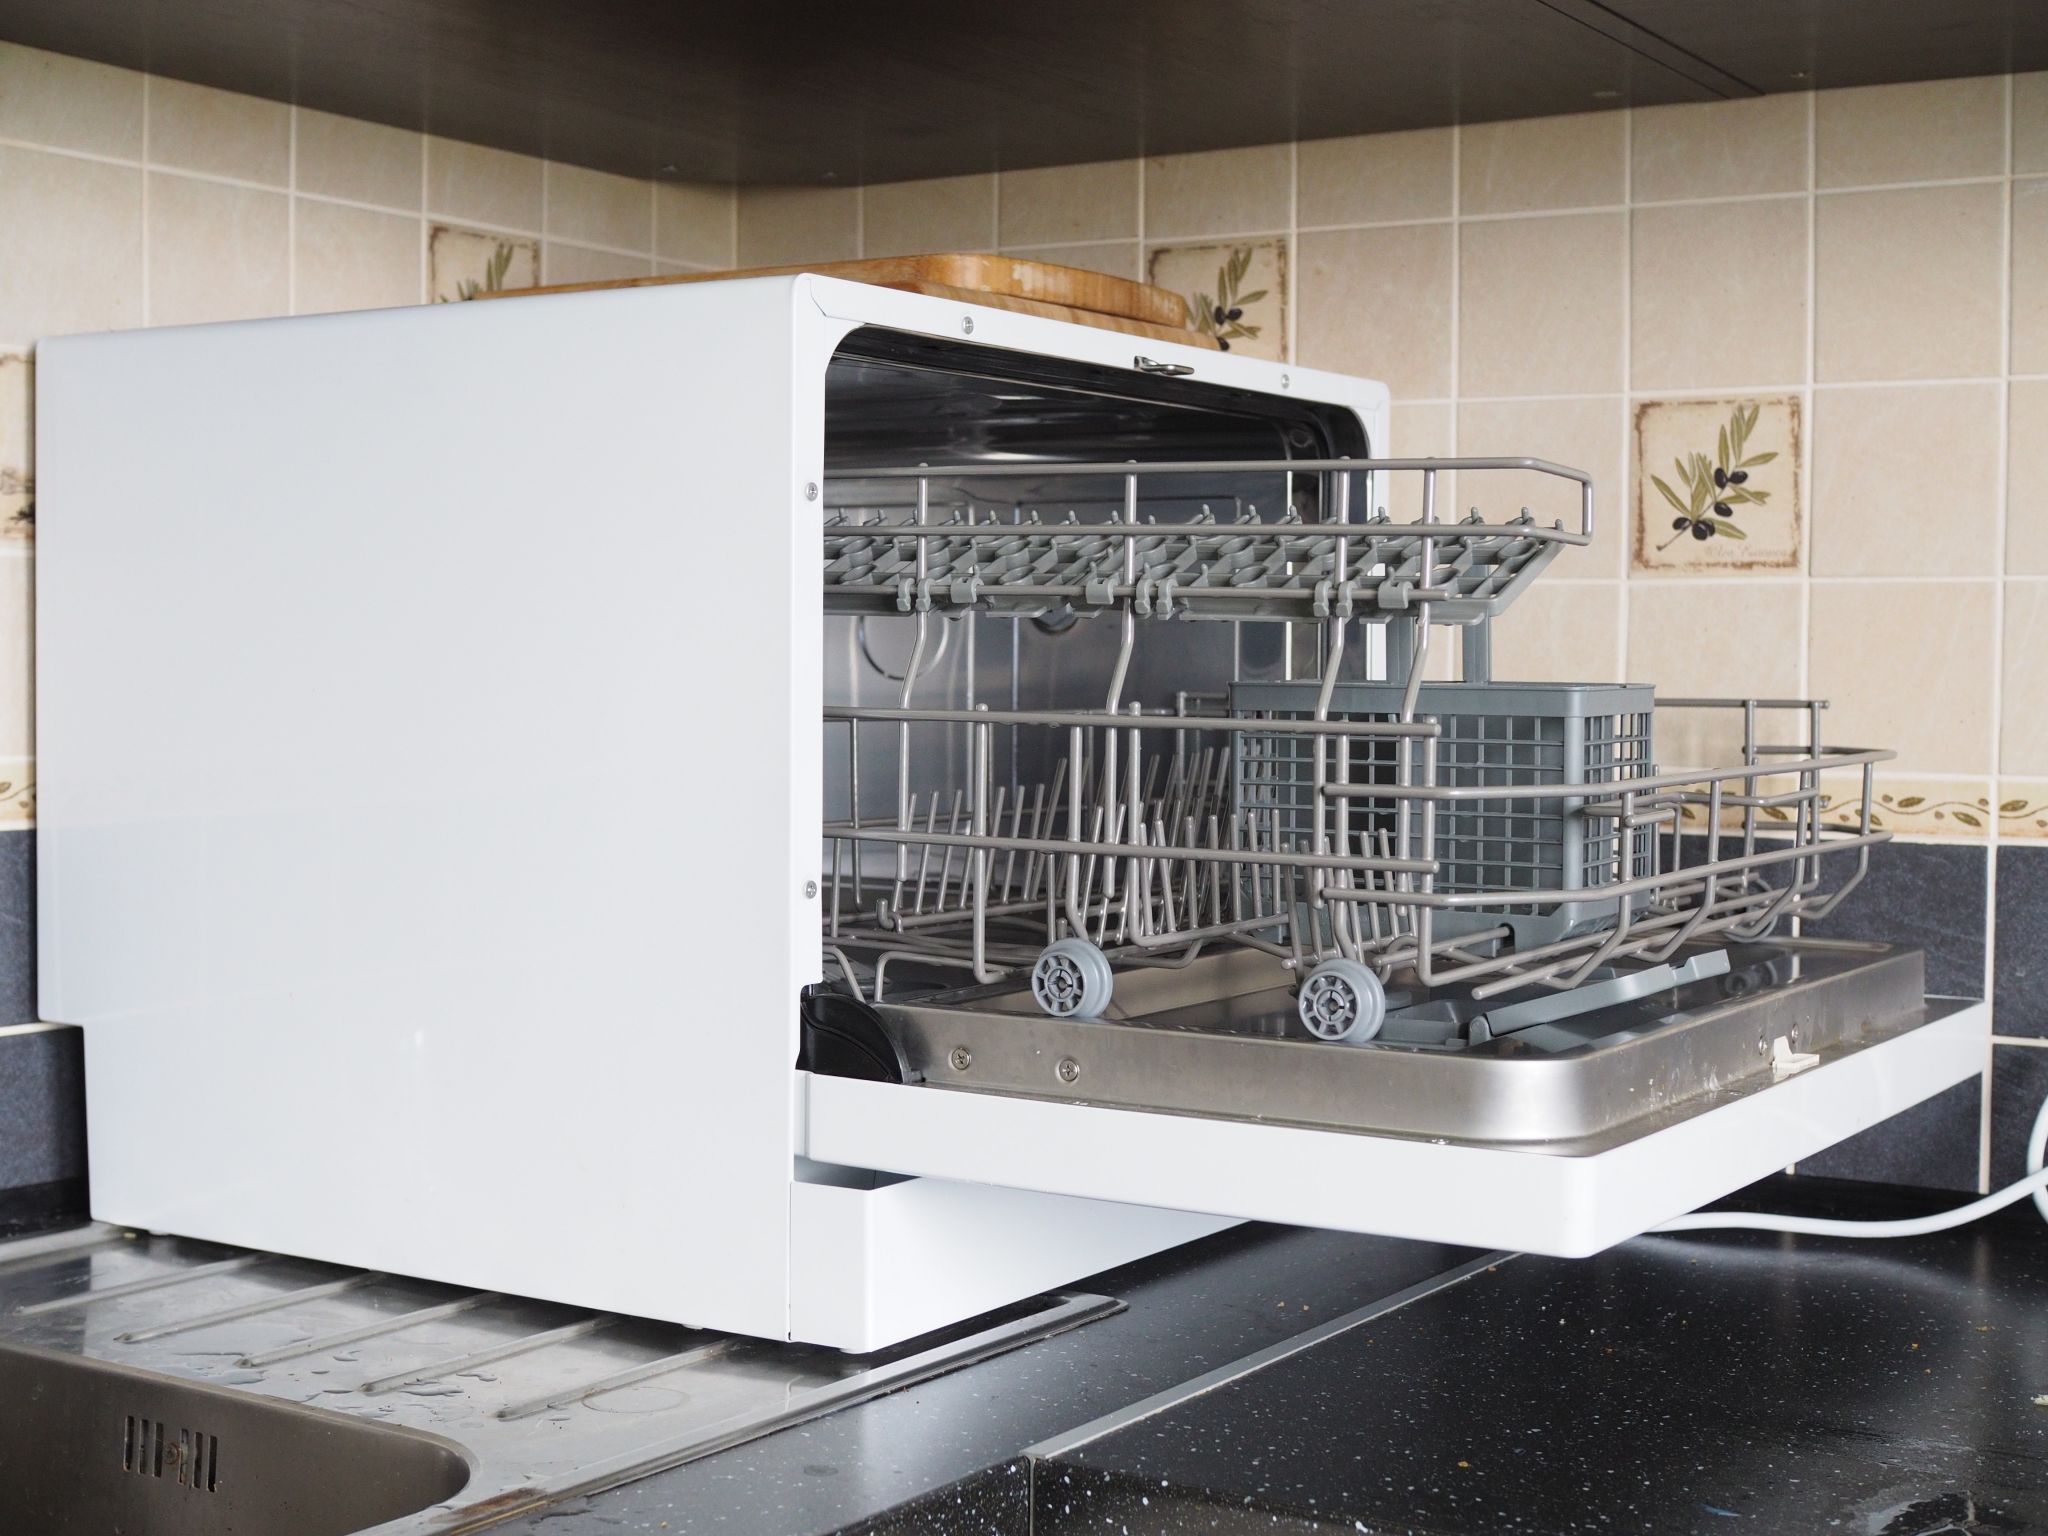 Небольшая посудомоечная машина. Flavia td 55 Valara. Посудомоечная машина 55см. Td 55 Valara посудомоечная машина (настольная). ПММ Флавия.